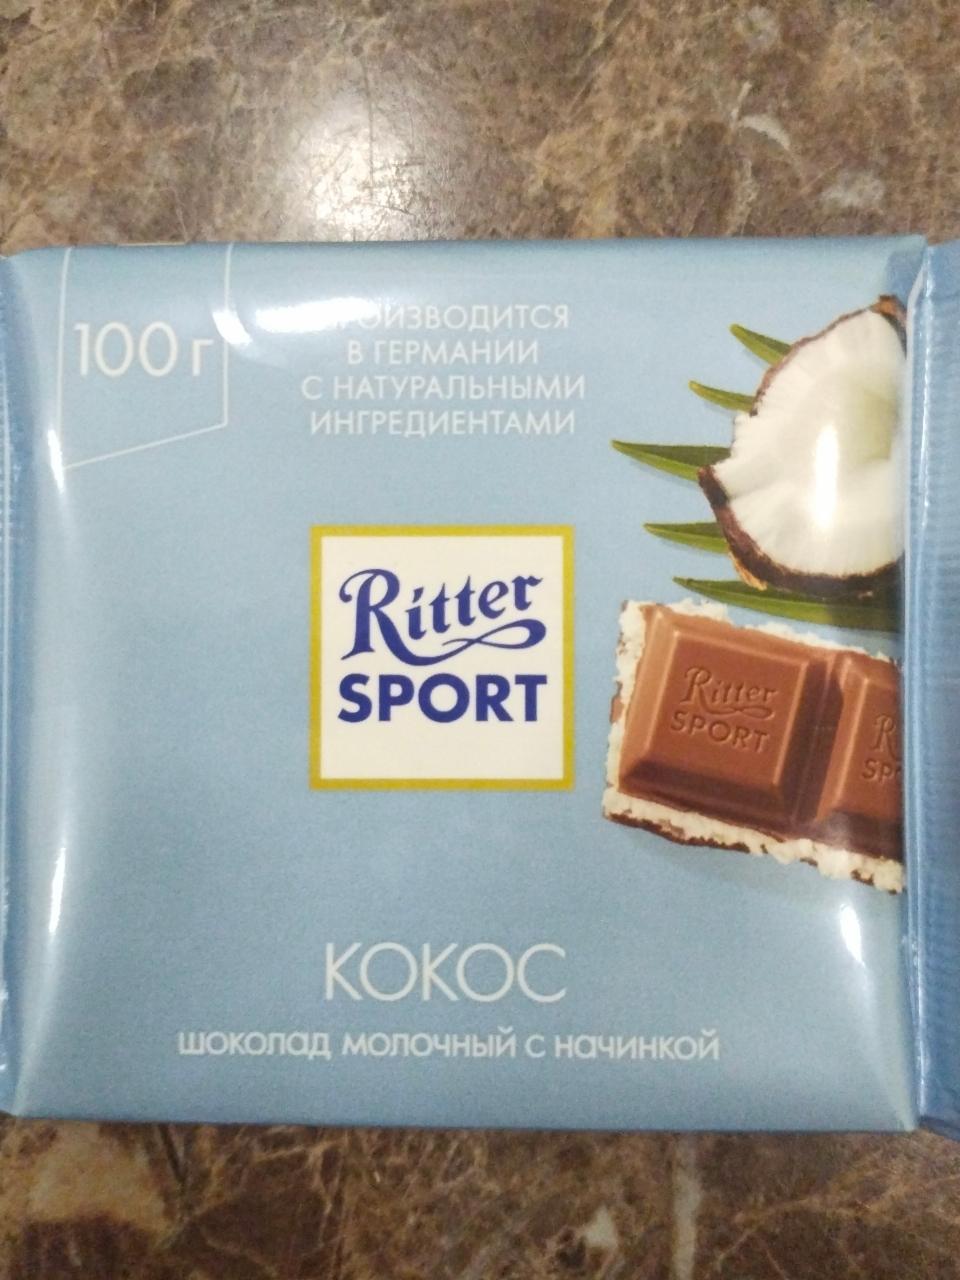 Фото - Шоколад с кокосовой начинкой Ritter Sport